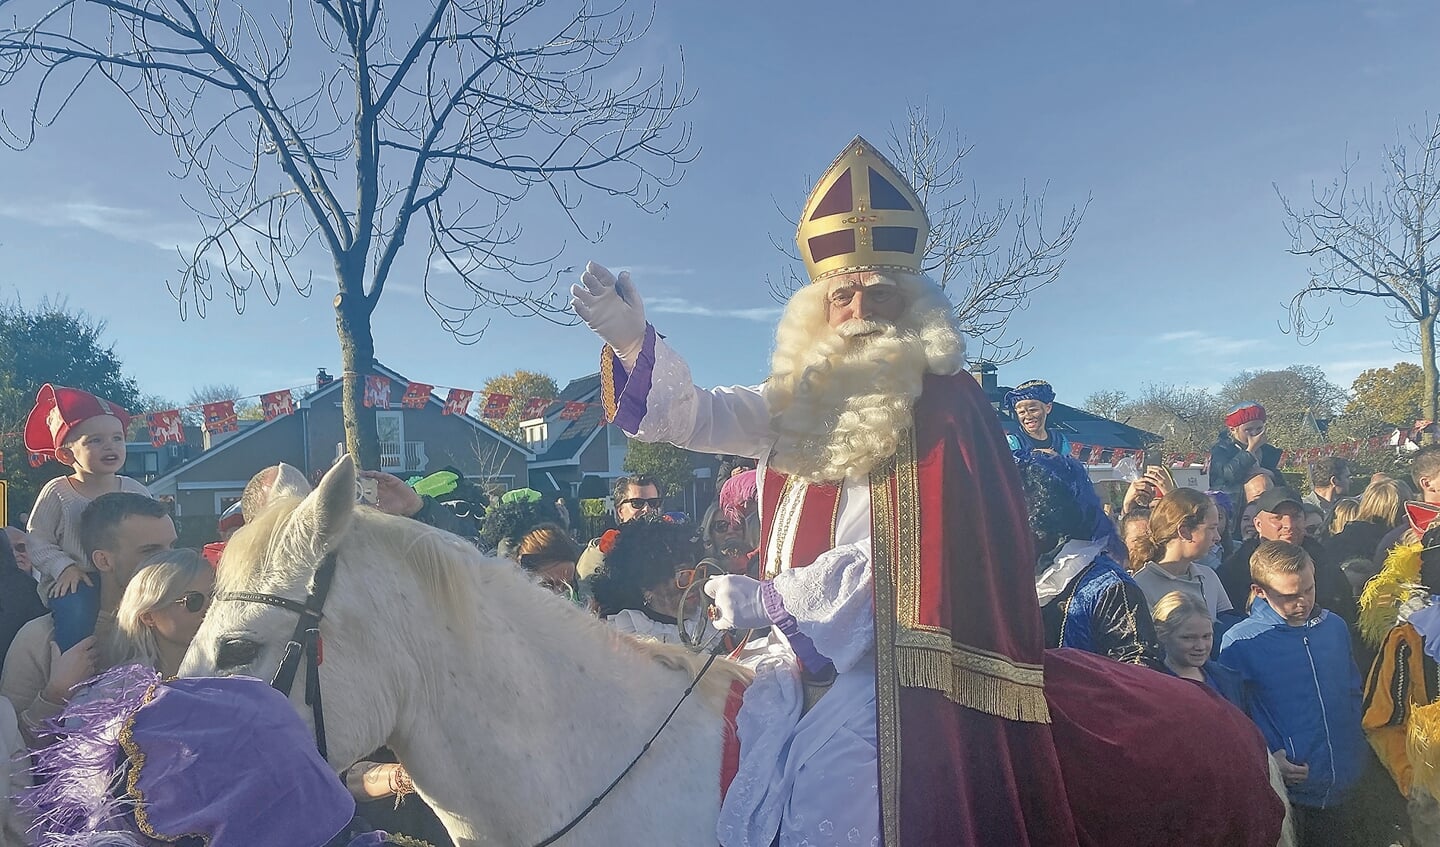 Op zijn paard Ozosnel was Sinterklaas snel ter plaatsein St. Joseph waar het kinderfeest werd vervolgd.